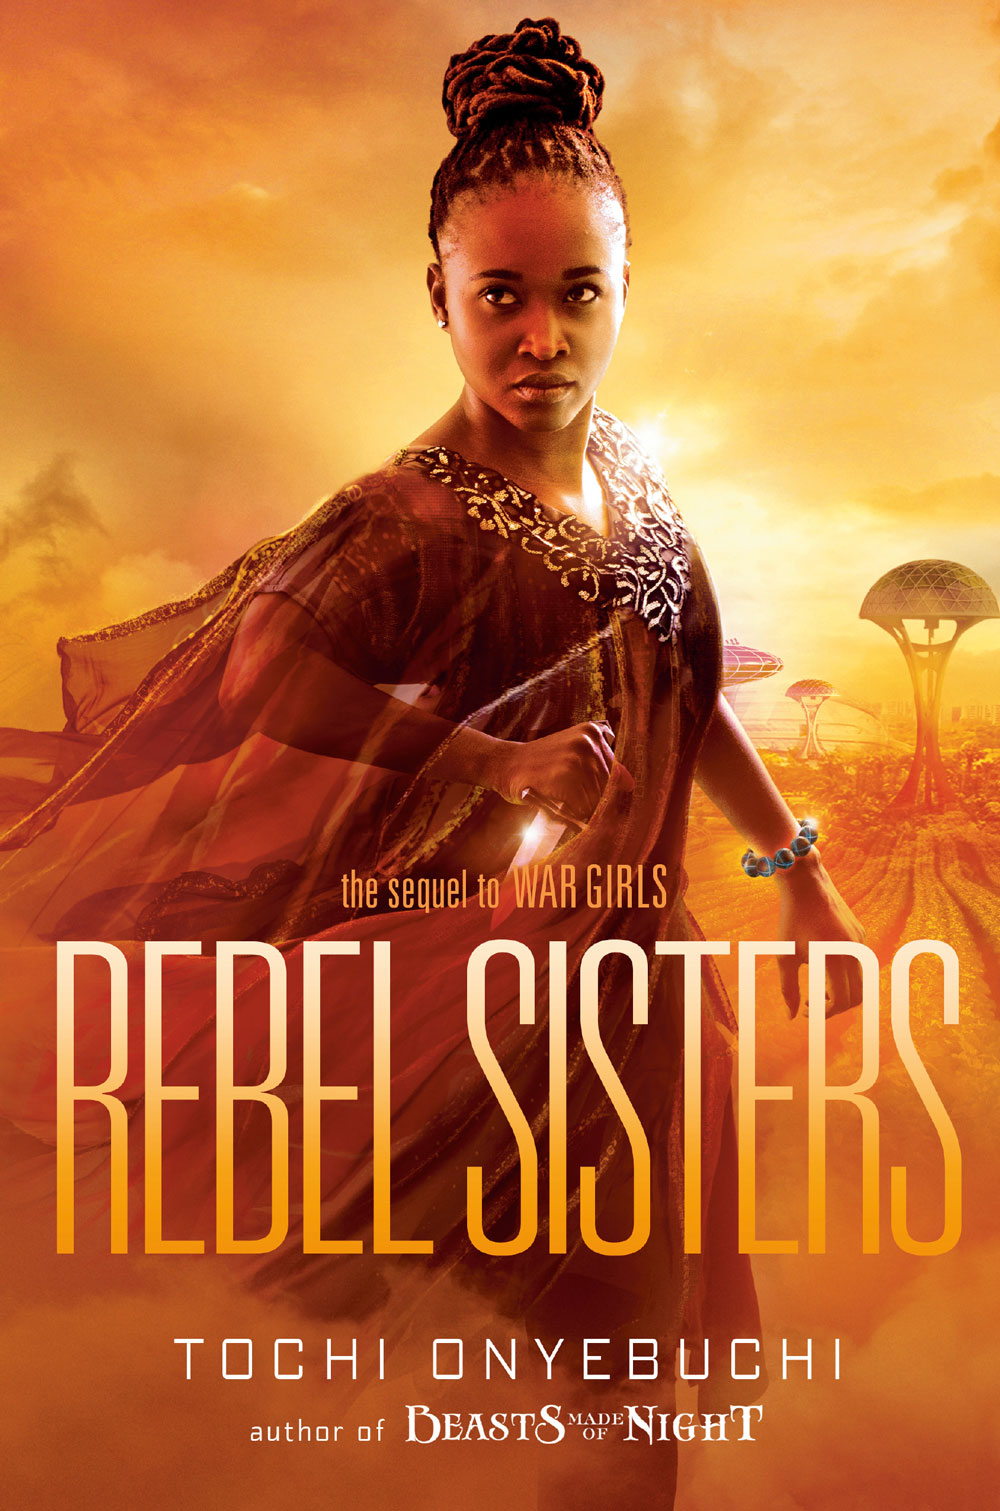 REBEL-SISTERS-cover